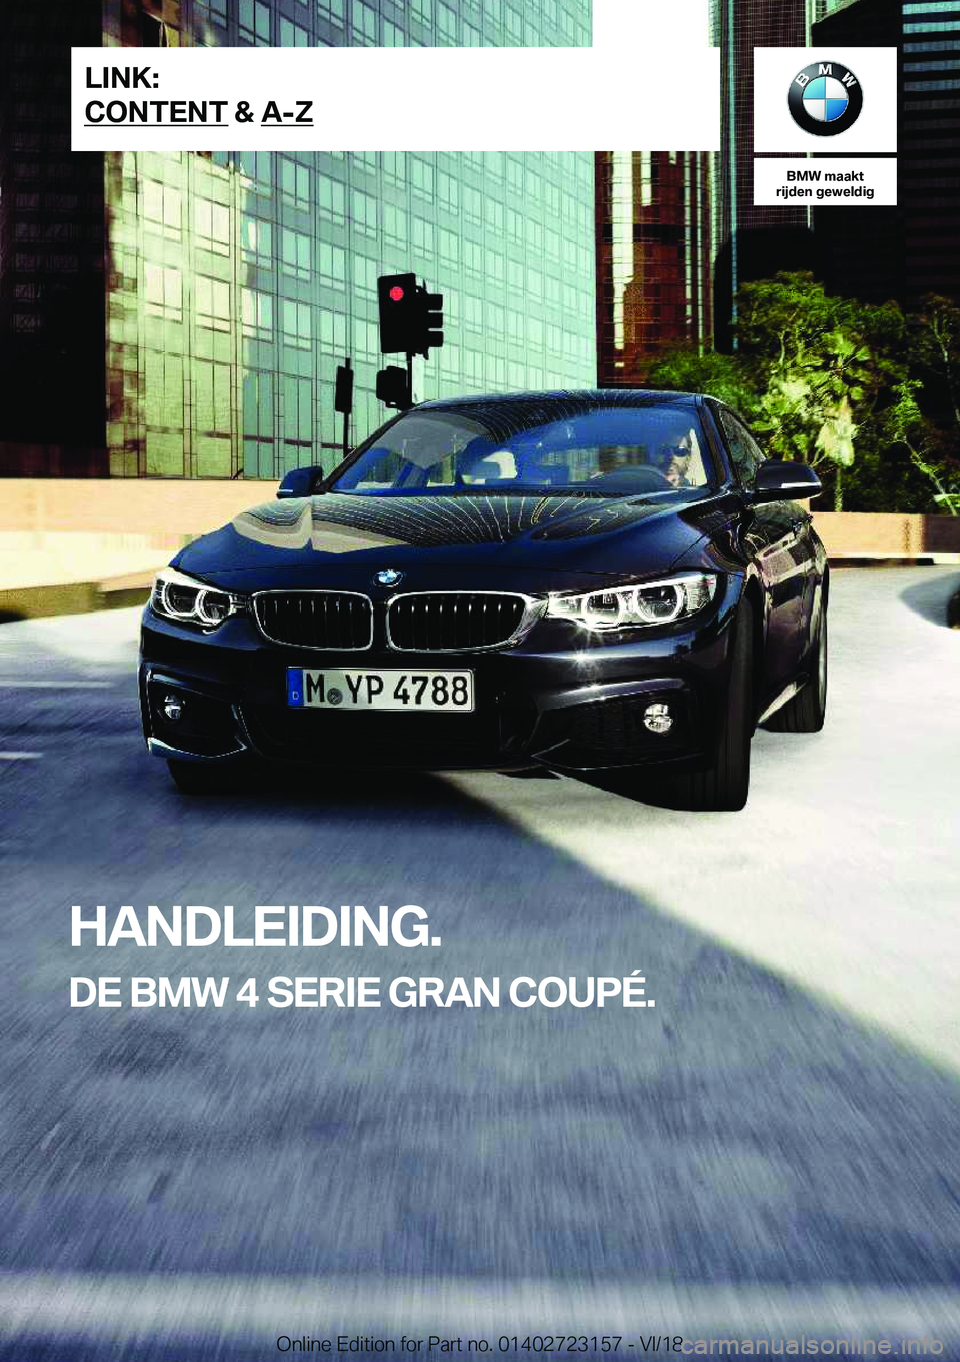 BMW 4 SERIES GRAN COUPE 2019  Instructieboekjes (in Dutch) �B�M�W��m�a�a�k�t
�r�i�j�d�e�n��g�e�w�e�l�d�i�g
�H�A�N�D�L�E�I�D�I�N�G�.
�D�E��B�M�W��4��S�E�R�I�E��G�R�A�N��C�O�U�P�